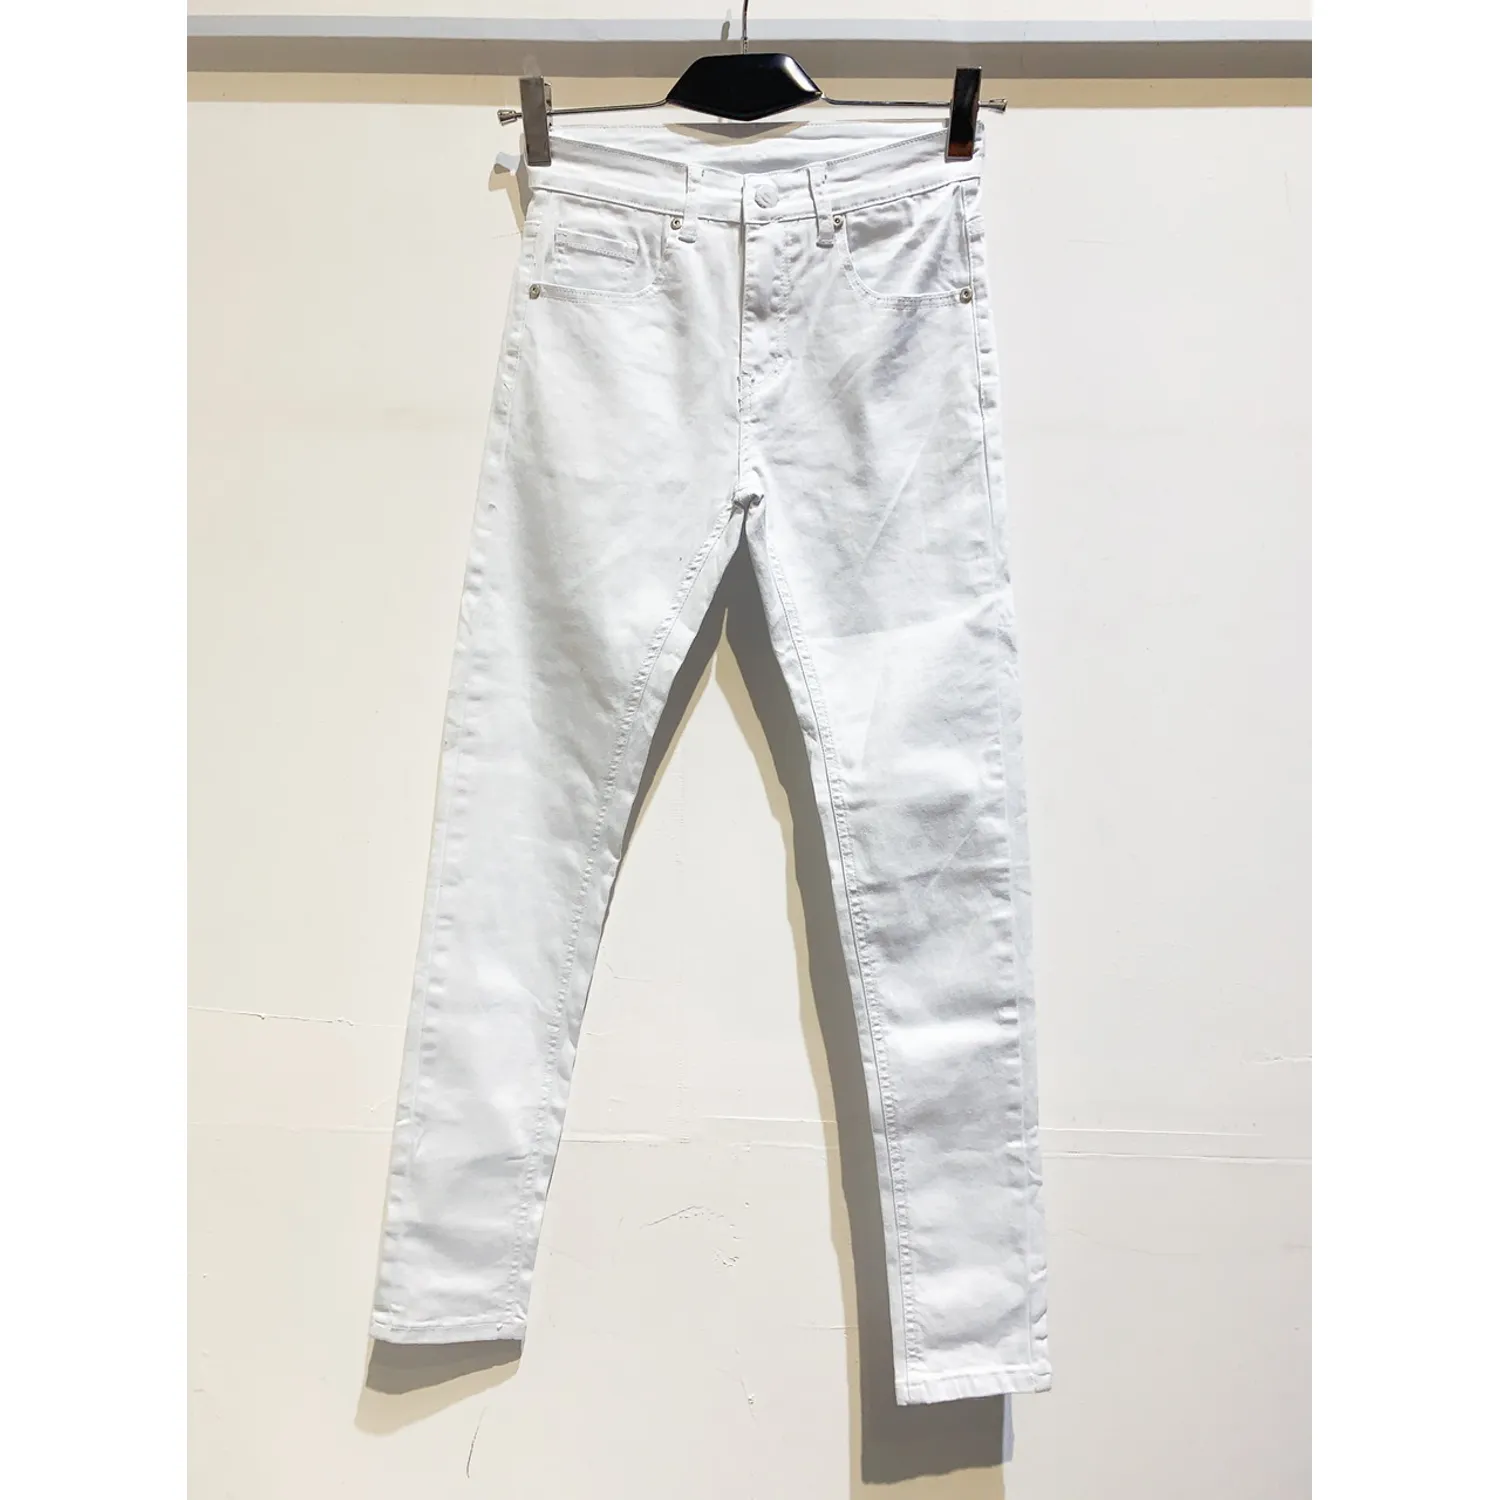 Ανδρικό jean παντελόνι λευκό slim